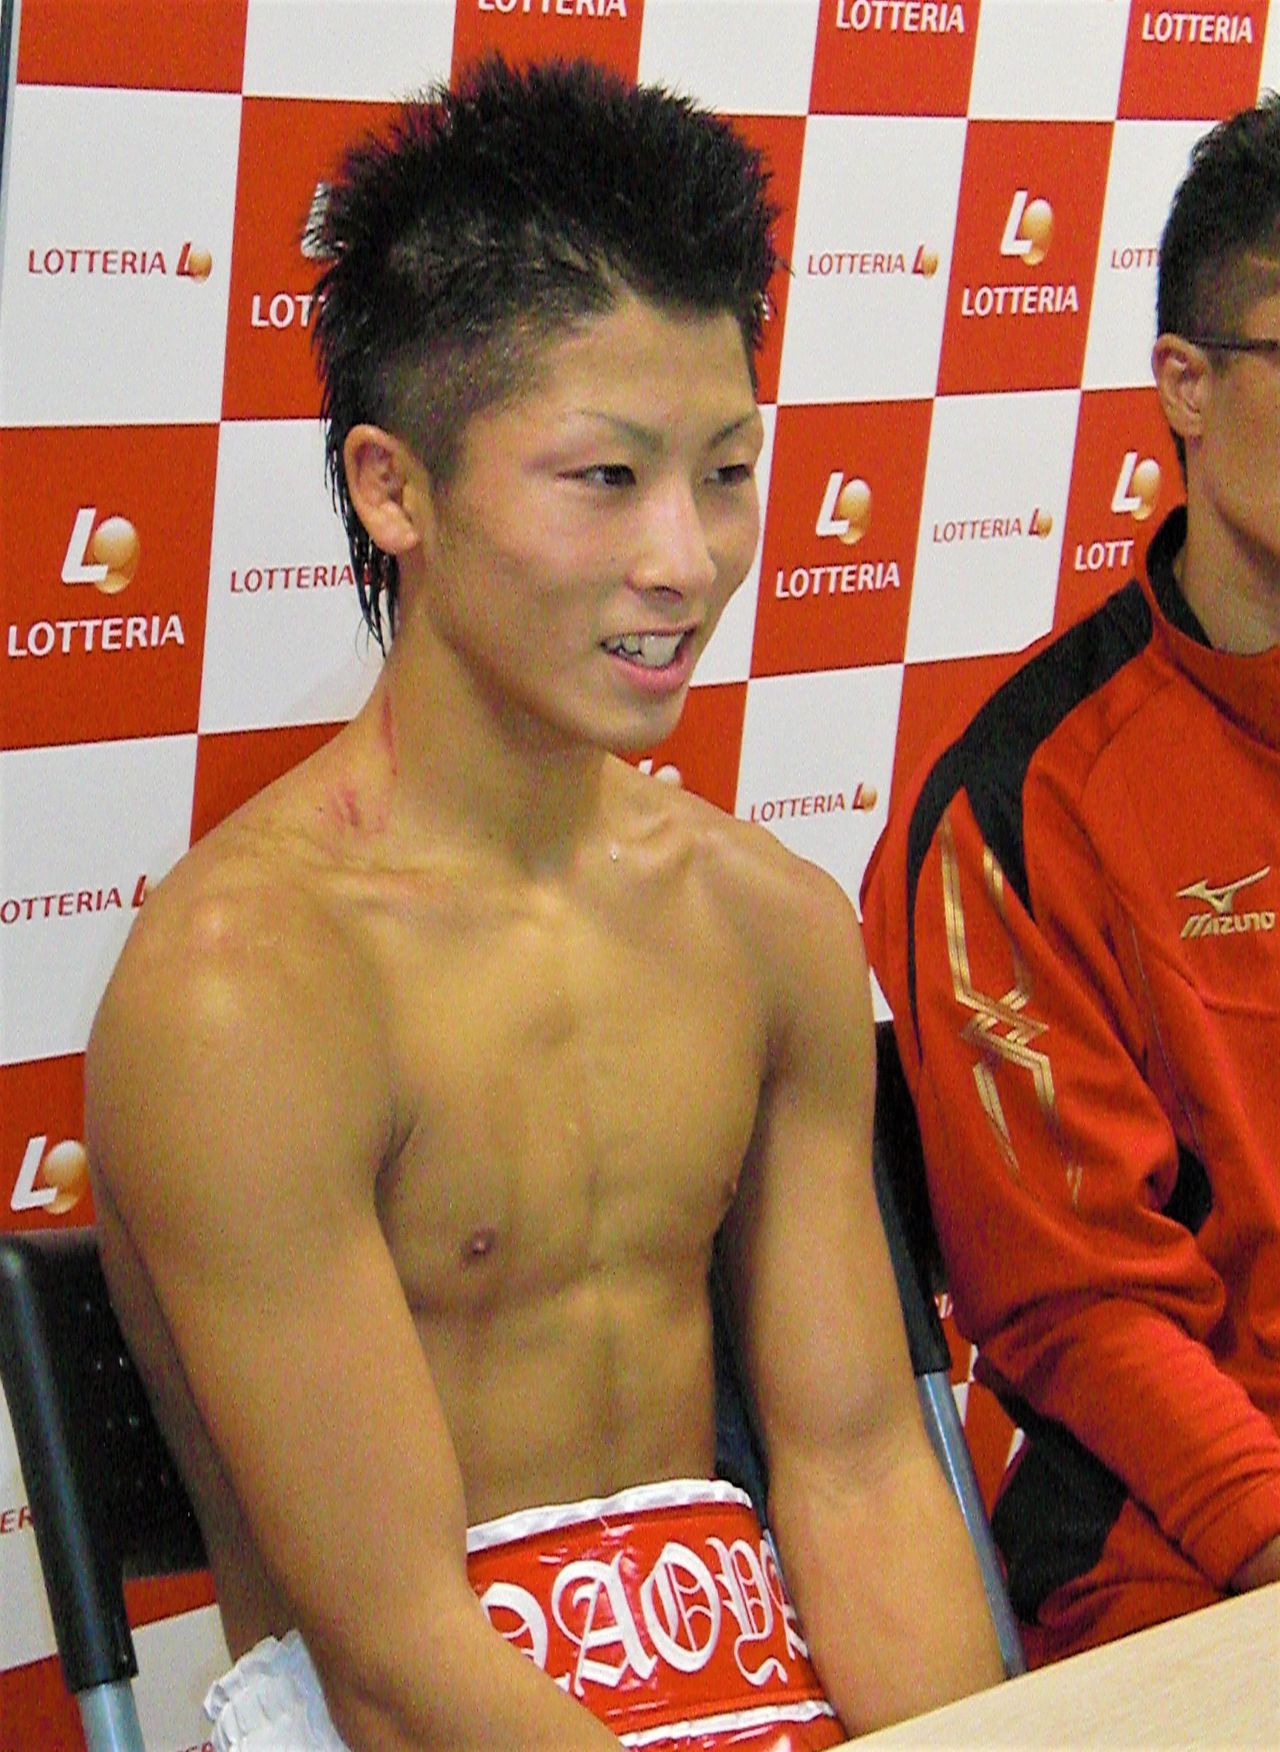 Inoue venció por nocaut el combate con el que debutó como boxeador profesional, tras hacerse con los siete grandes títulos amateurs. (Fotografía tomada el 2 de octubre de 2012 en el estadio Kōrakuen Hall de Tokio / Jiji Press)